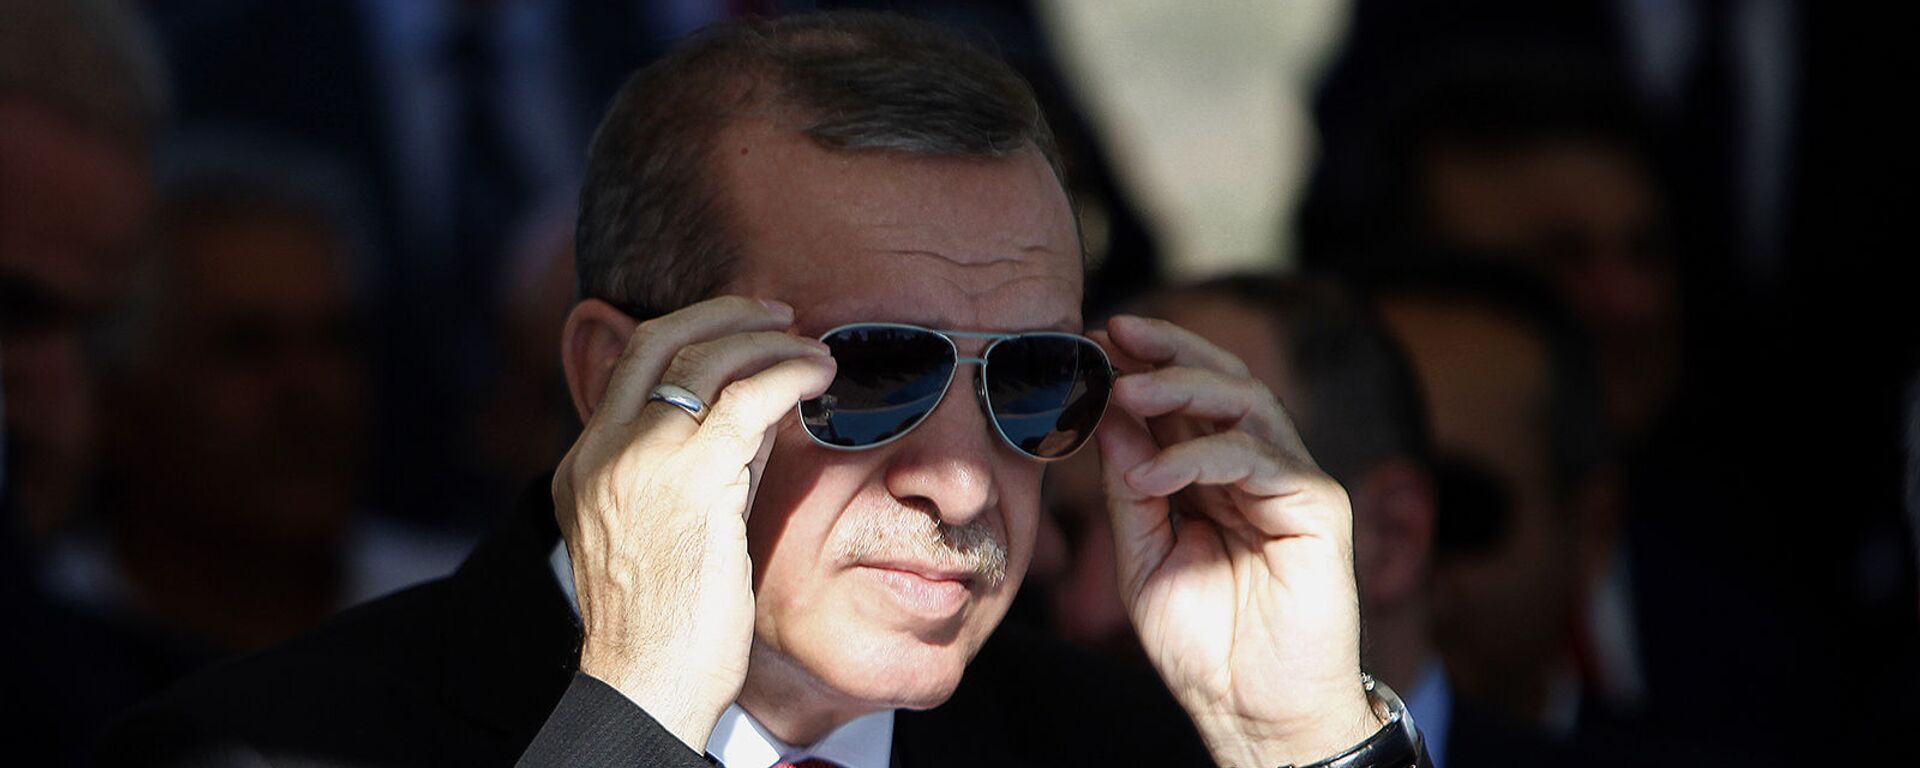 Президент Турции Реджеп Тайип Эрдоган поправляет солнцезащитные очки - Sputnik Արմենիա, 1920, 19.08.2021